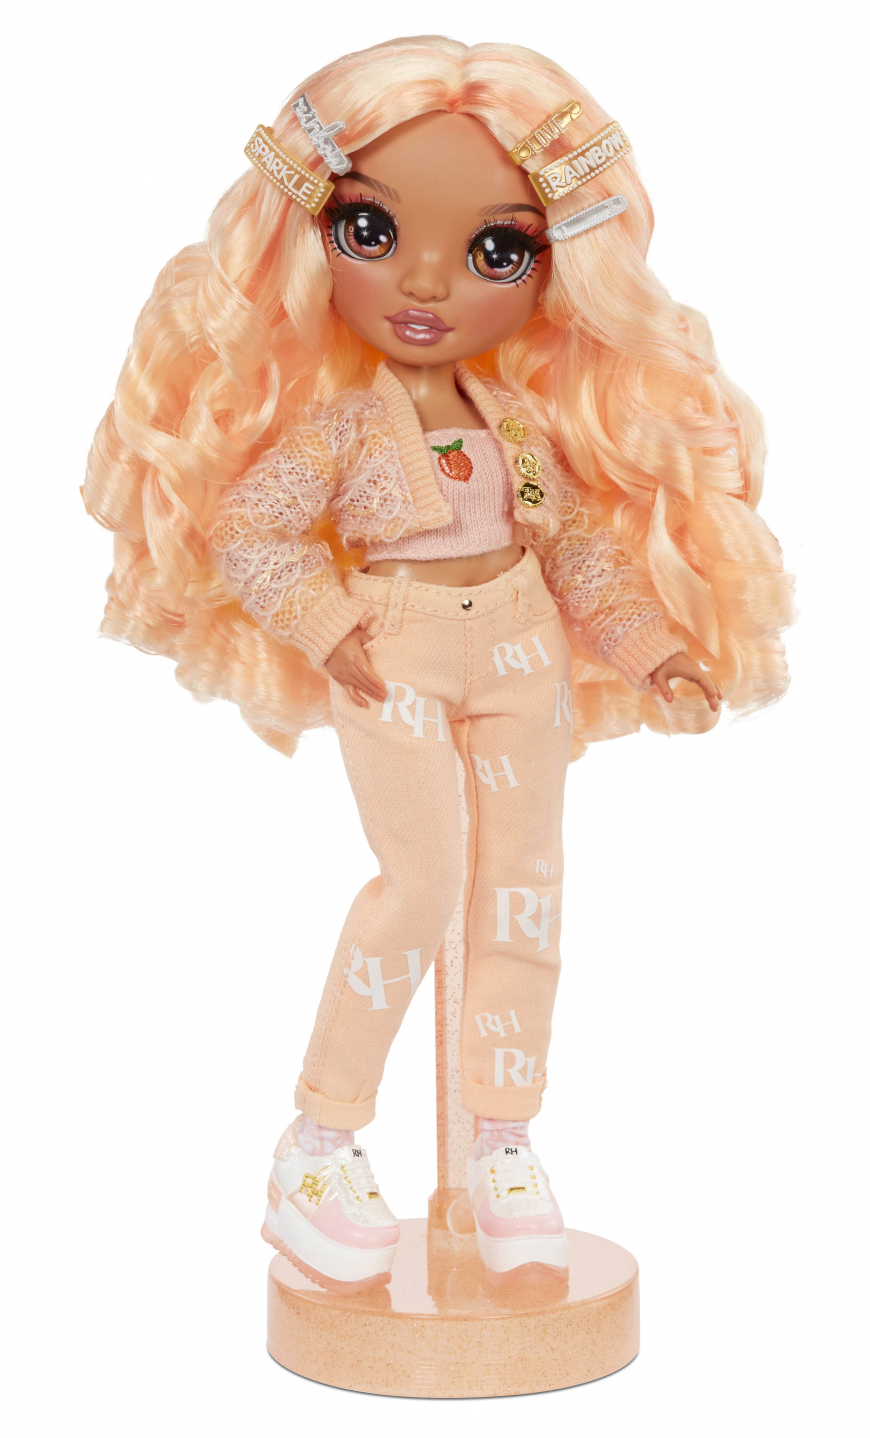 Rainbow High Series 3 Peach doll Georgia Bloom doll